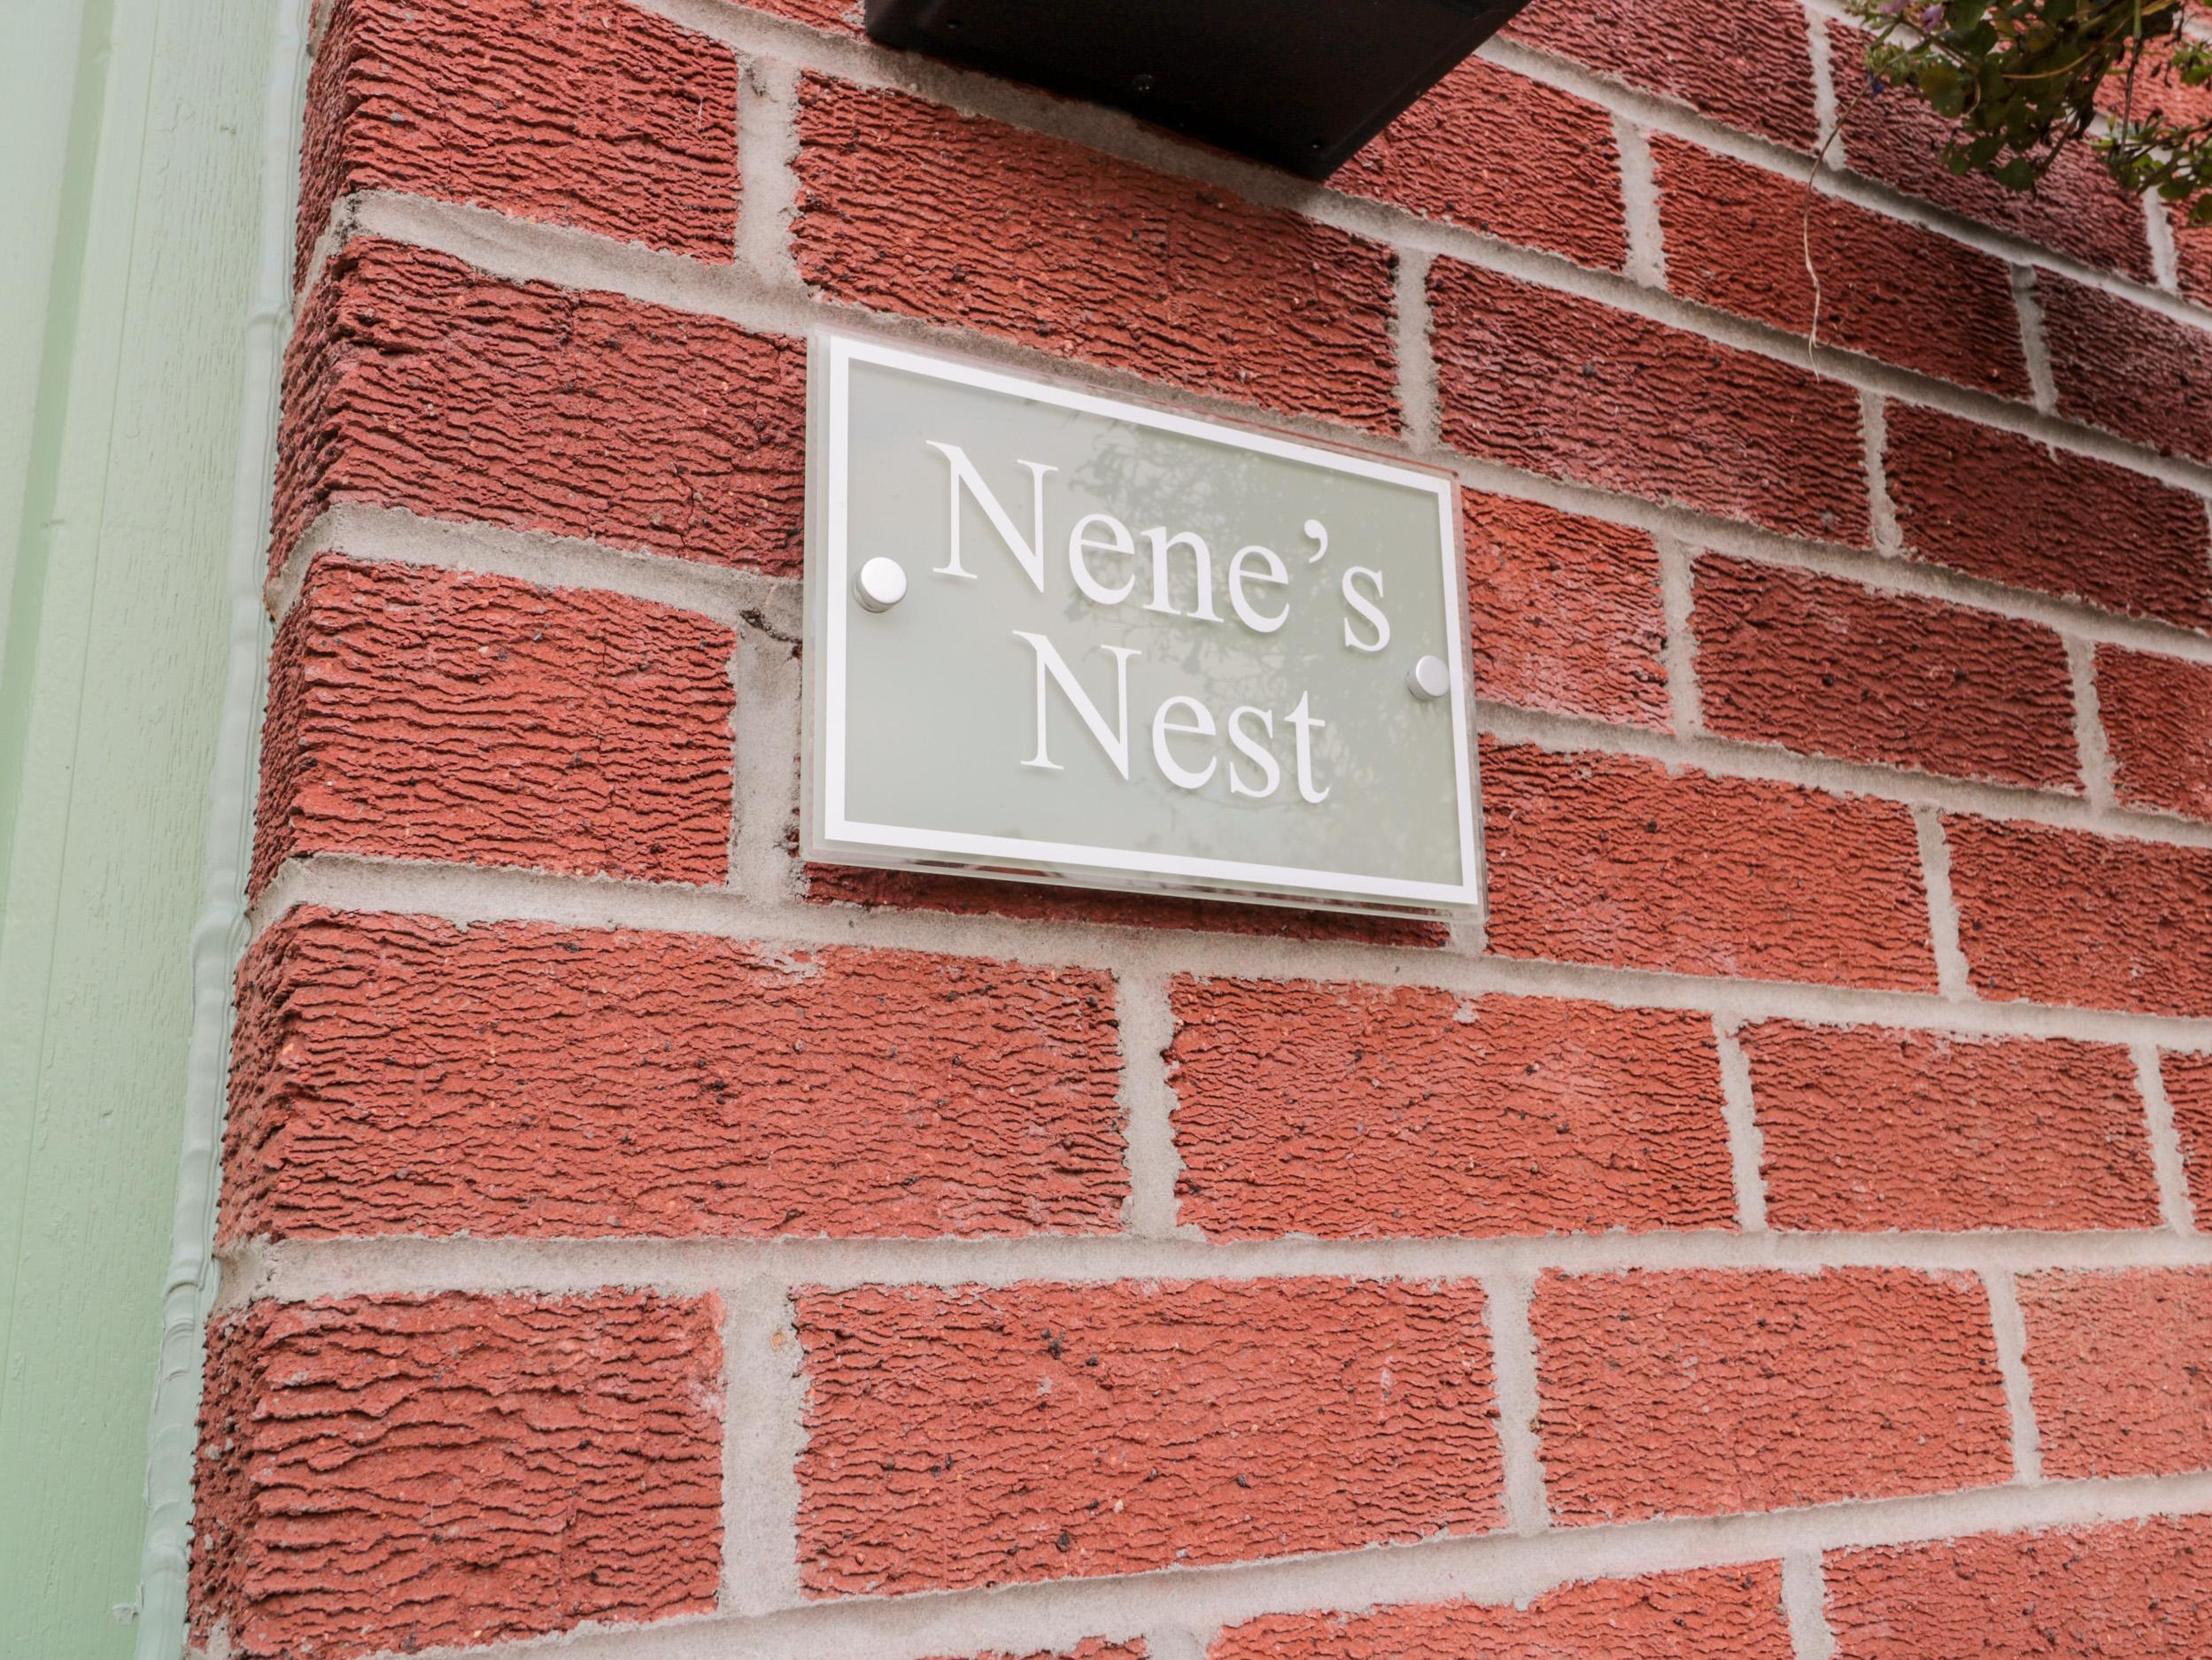 Nene's Nest